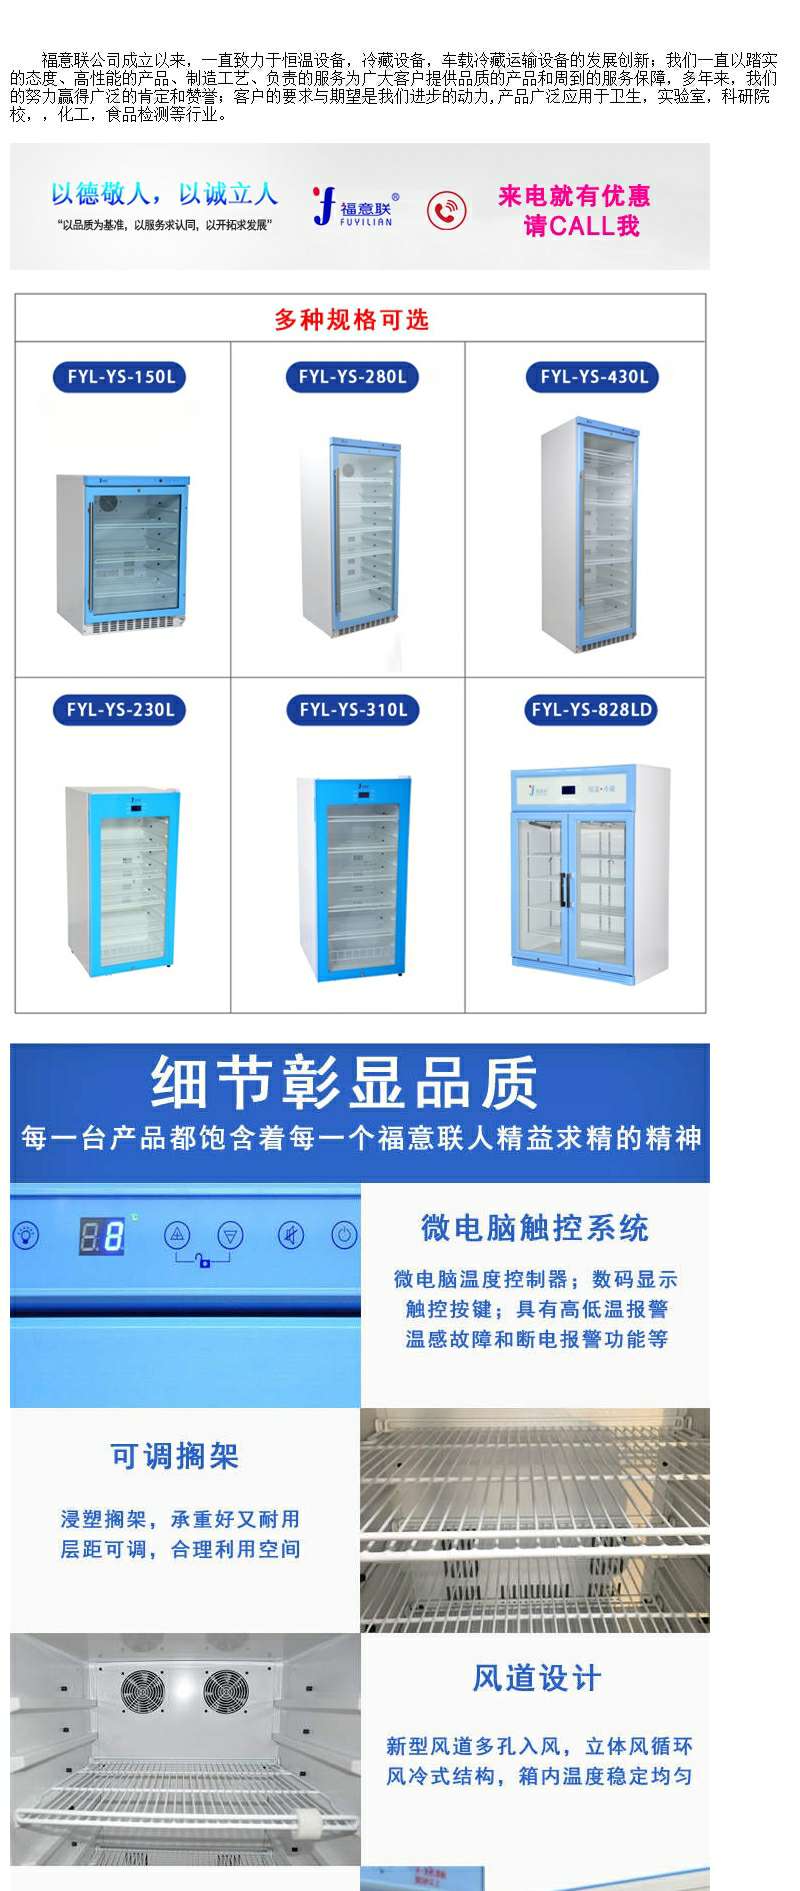 生物低温样品柜可调温度的样品恒温柜FYL-YS-310L